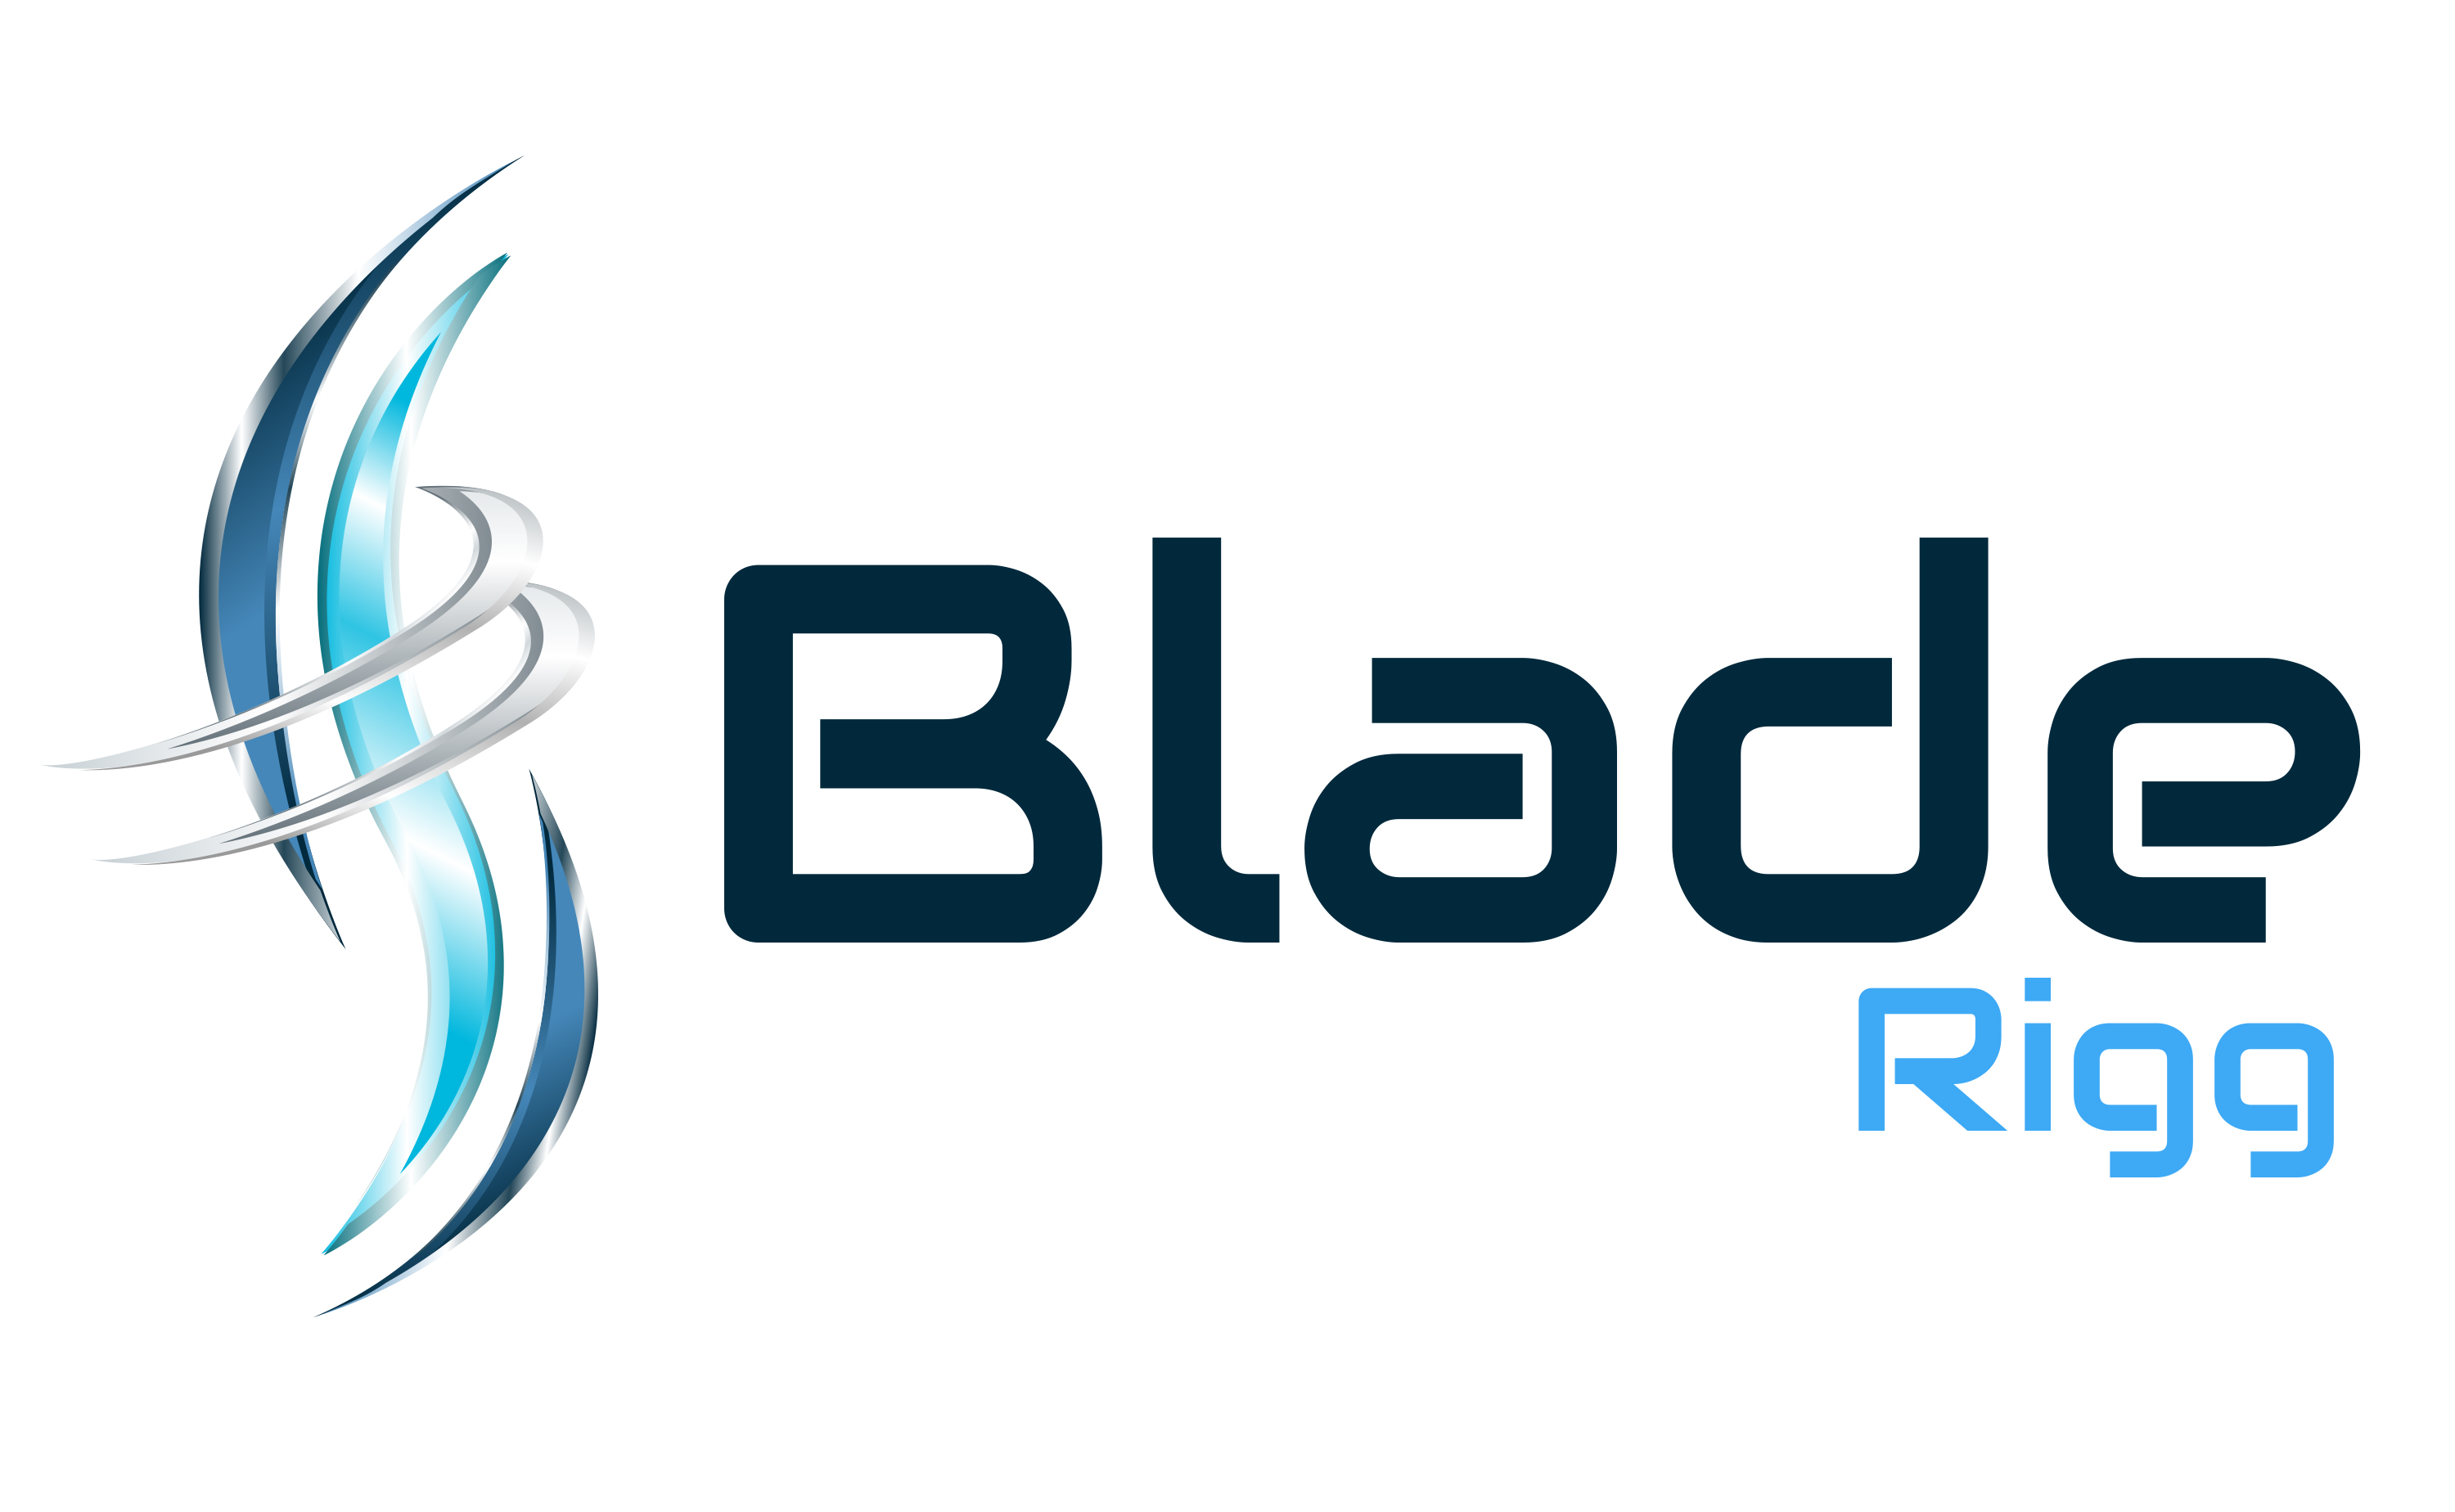 Blade Rigg Ltd